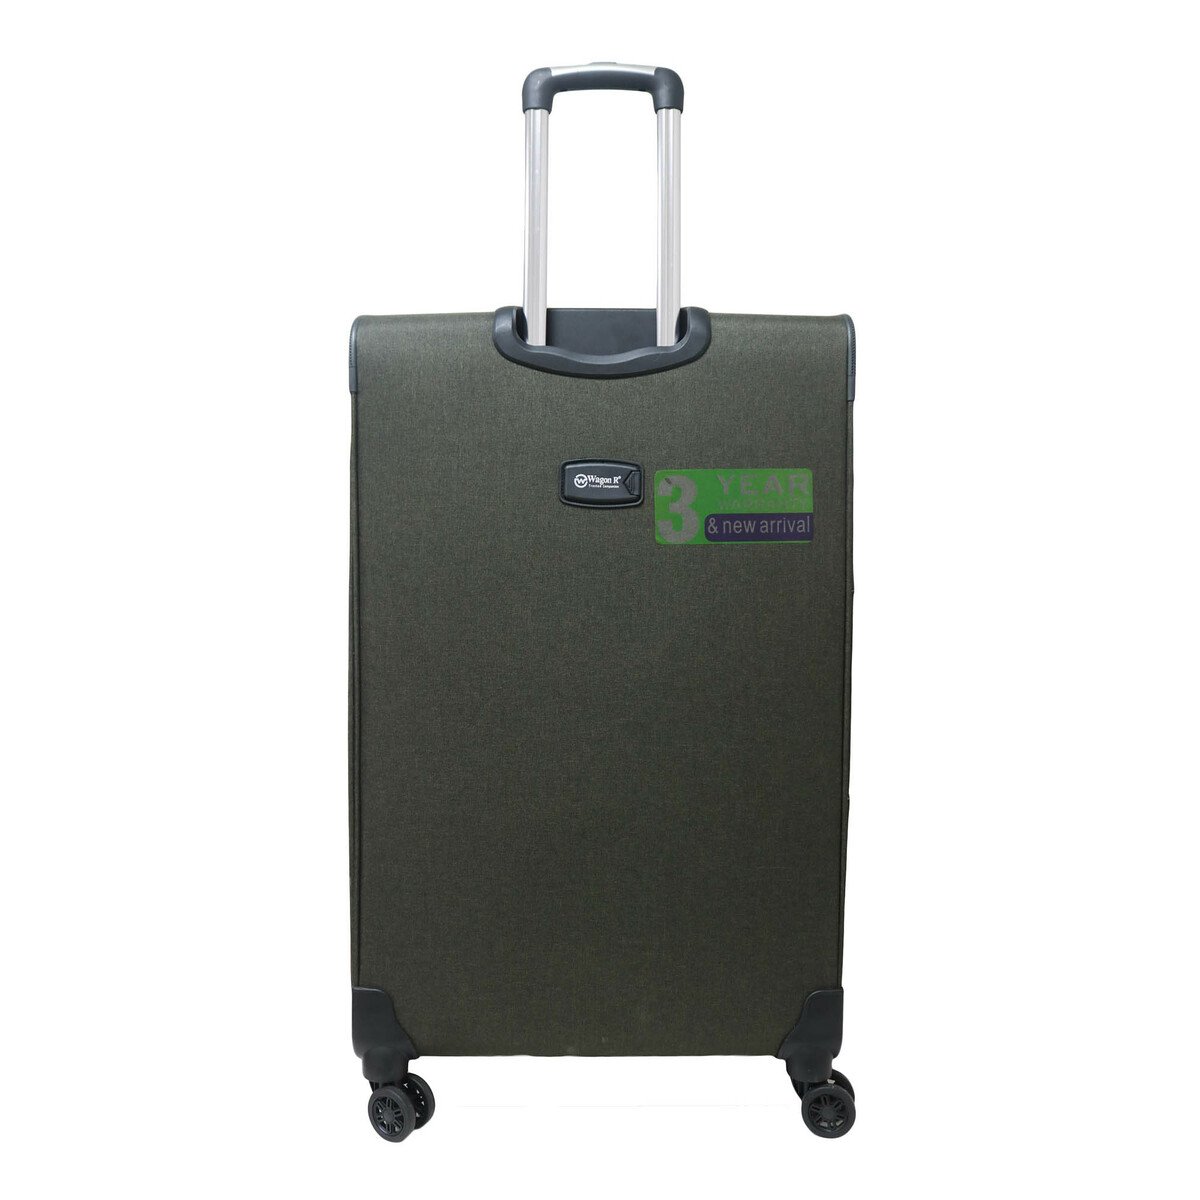 Wagon-R Soft Trolley Bag 0403NC121 19in